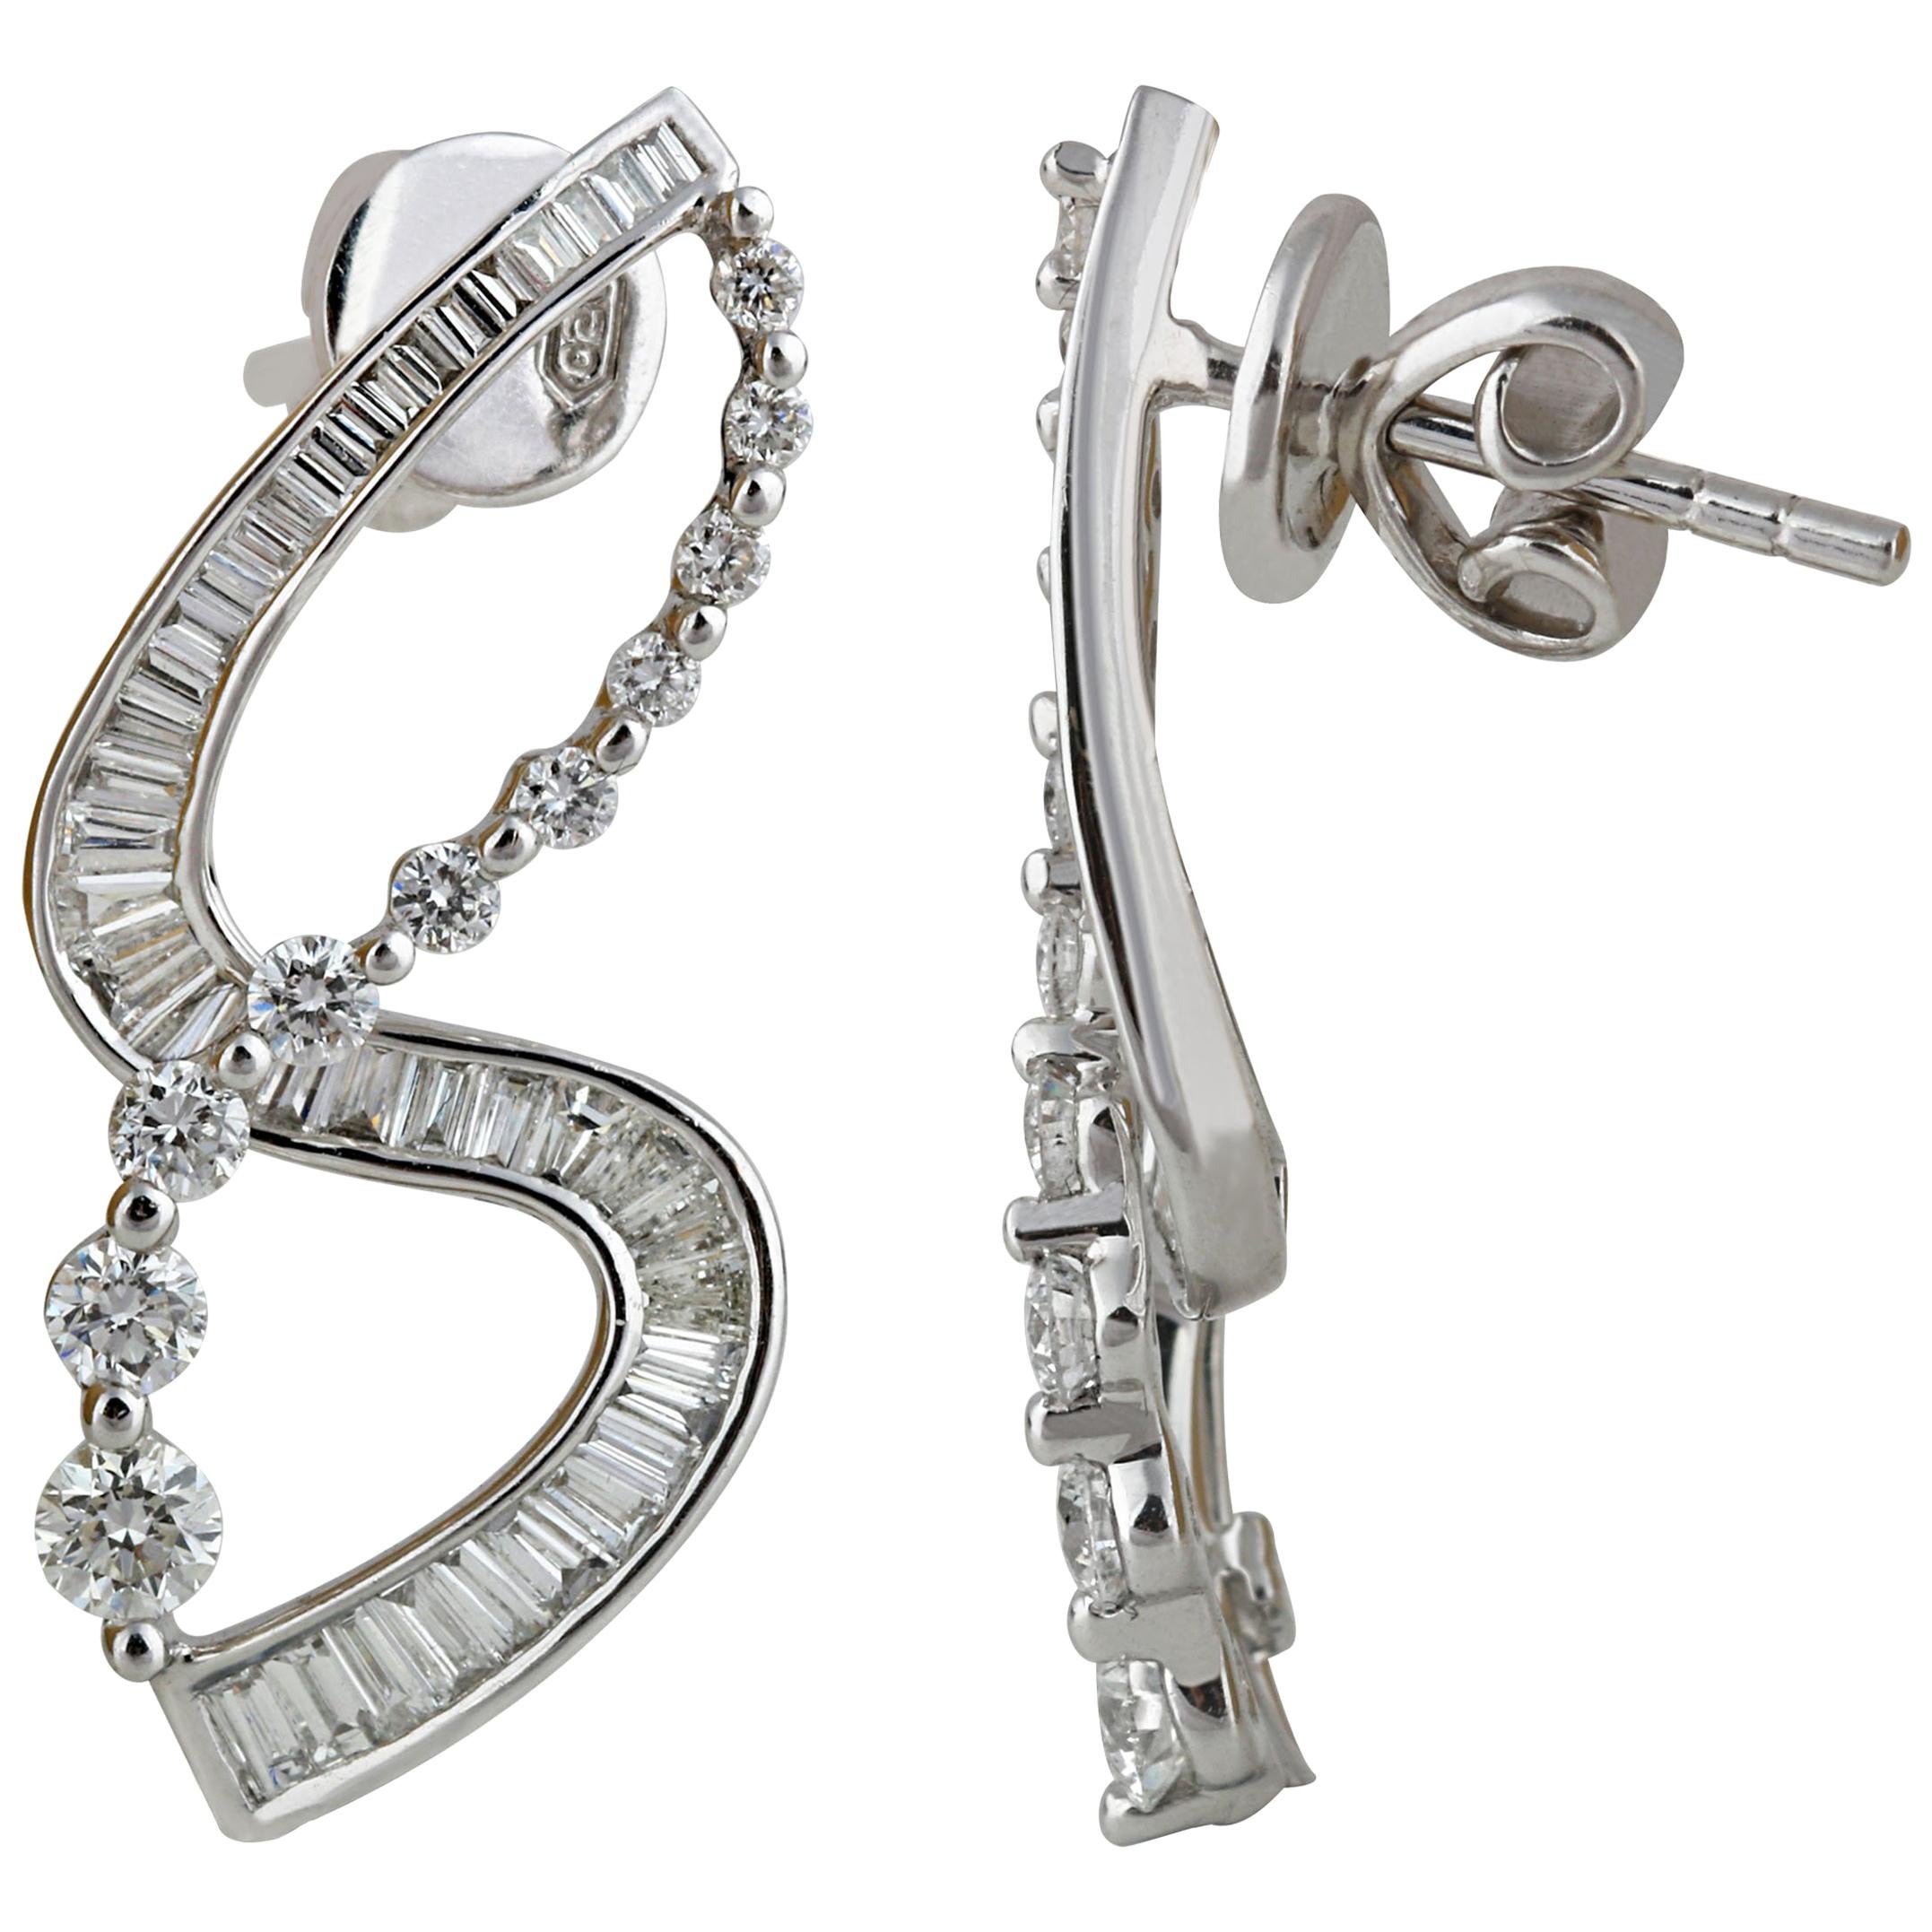 Studio Rêves S-Shaped Diamond Earrings in 18 Karat White Gold